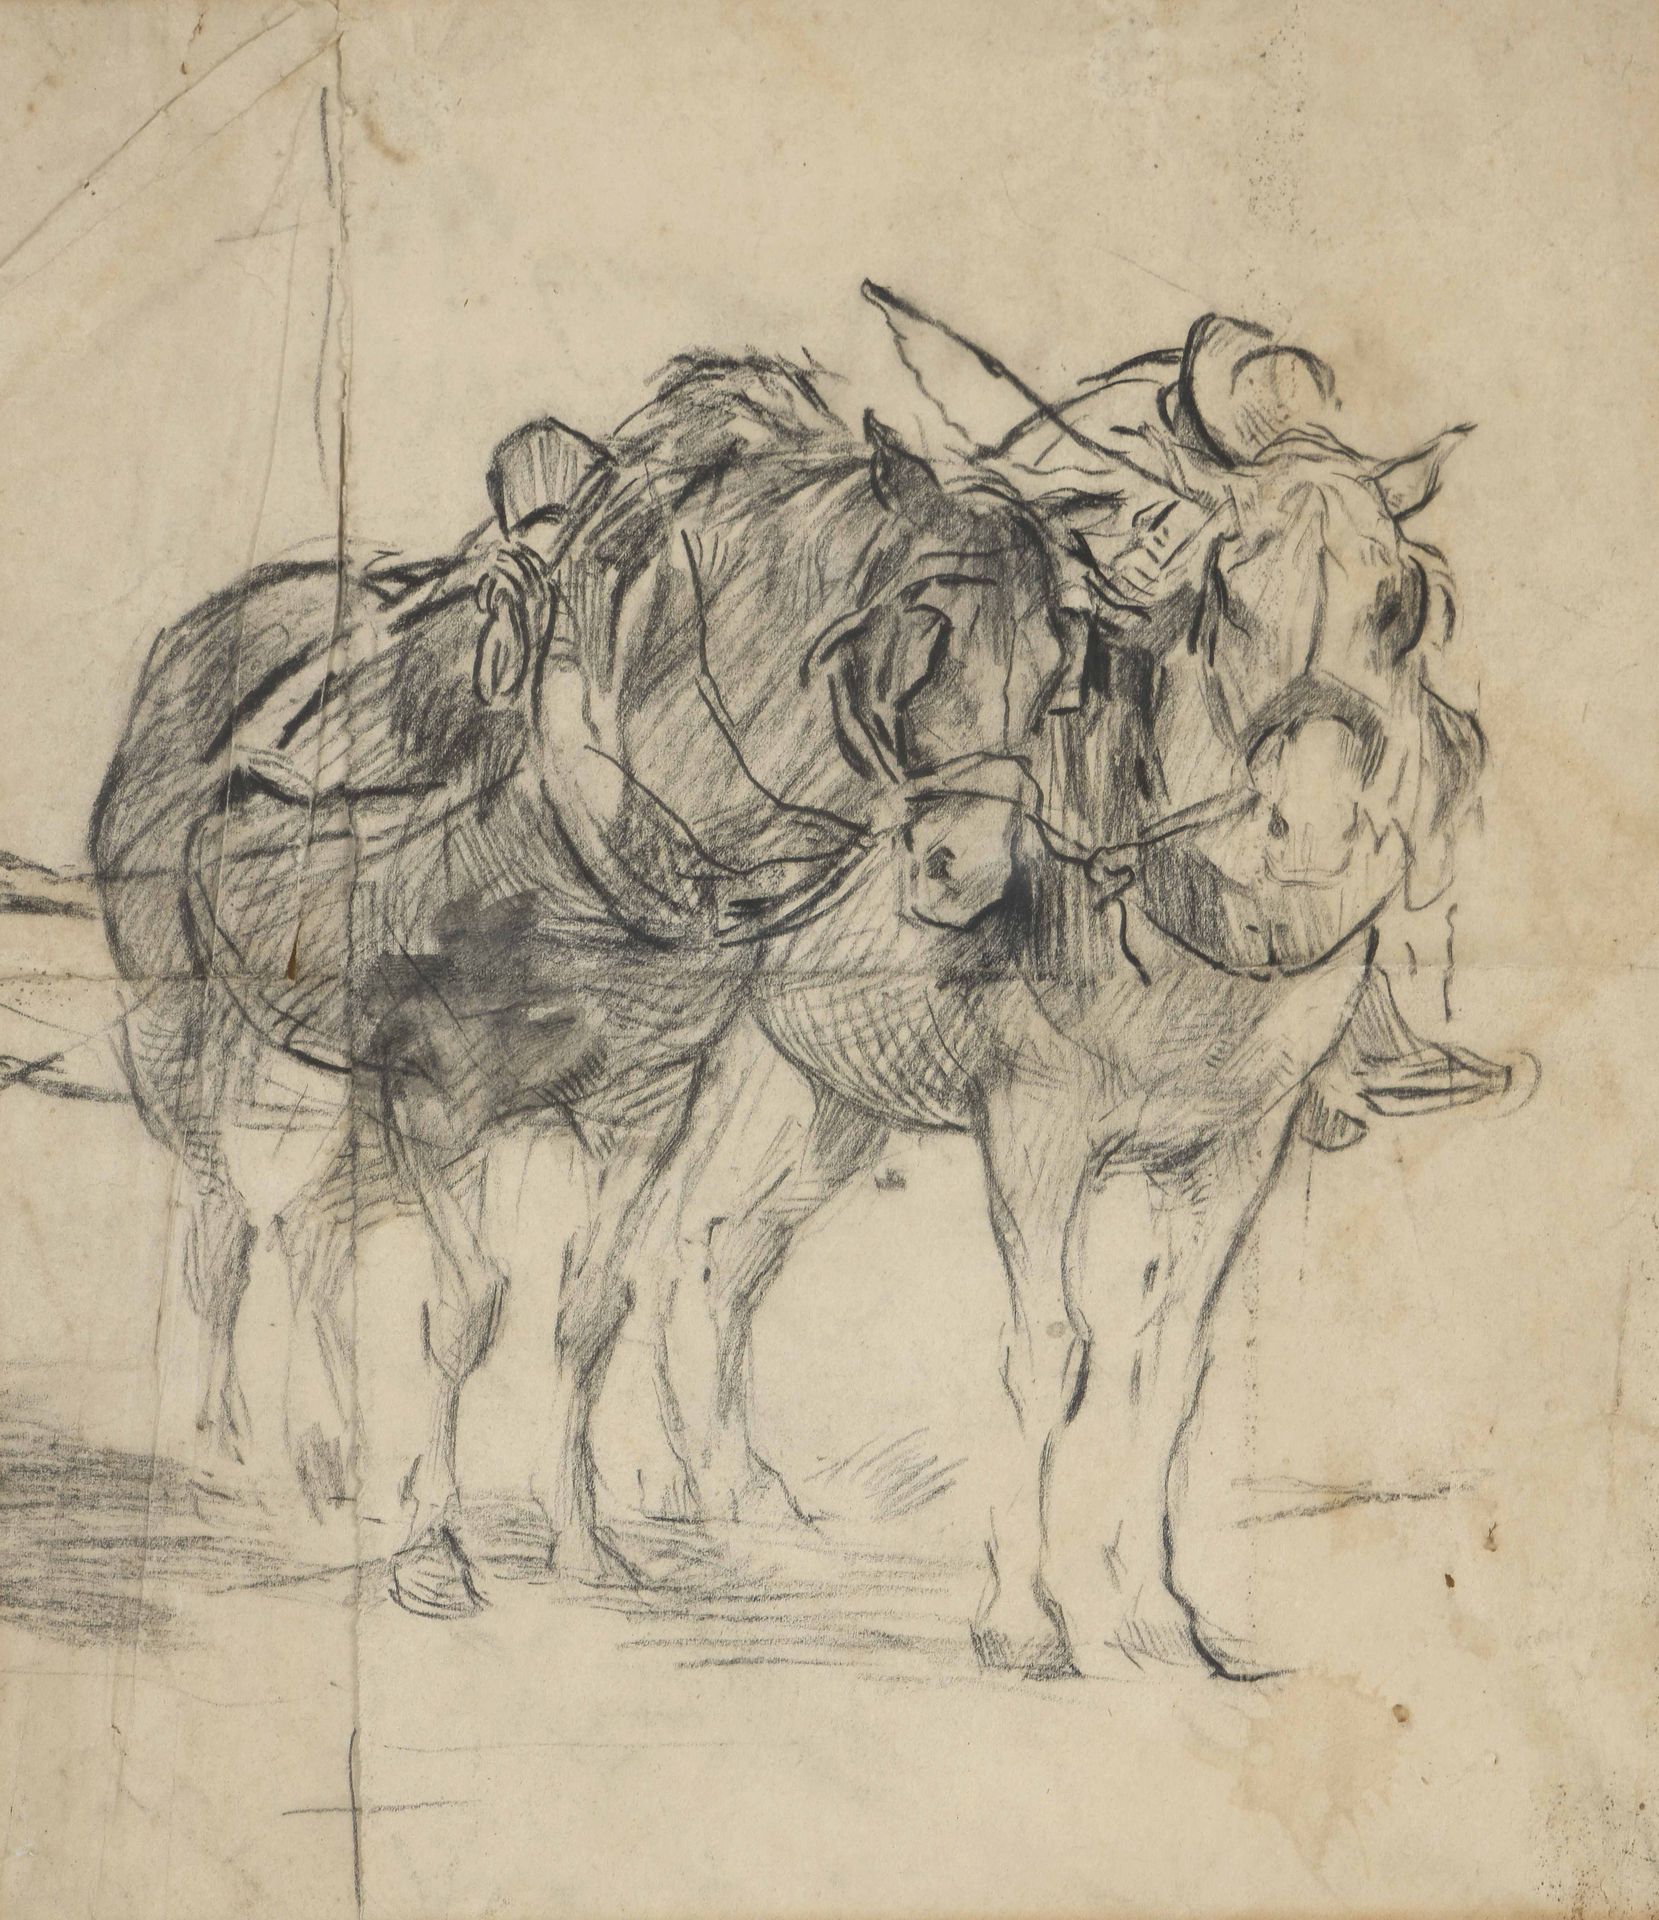 Null 19世纪末至20世纪初的学校
马具中的马
炭笔画在两张纸上（揉成一团，折叠，意外）。